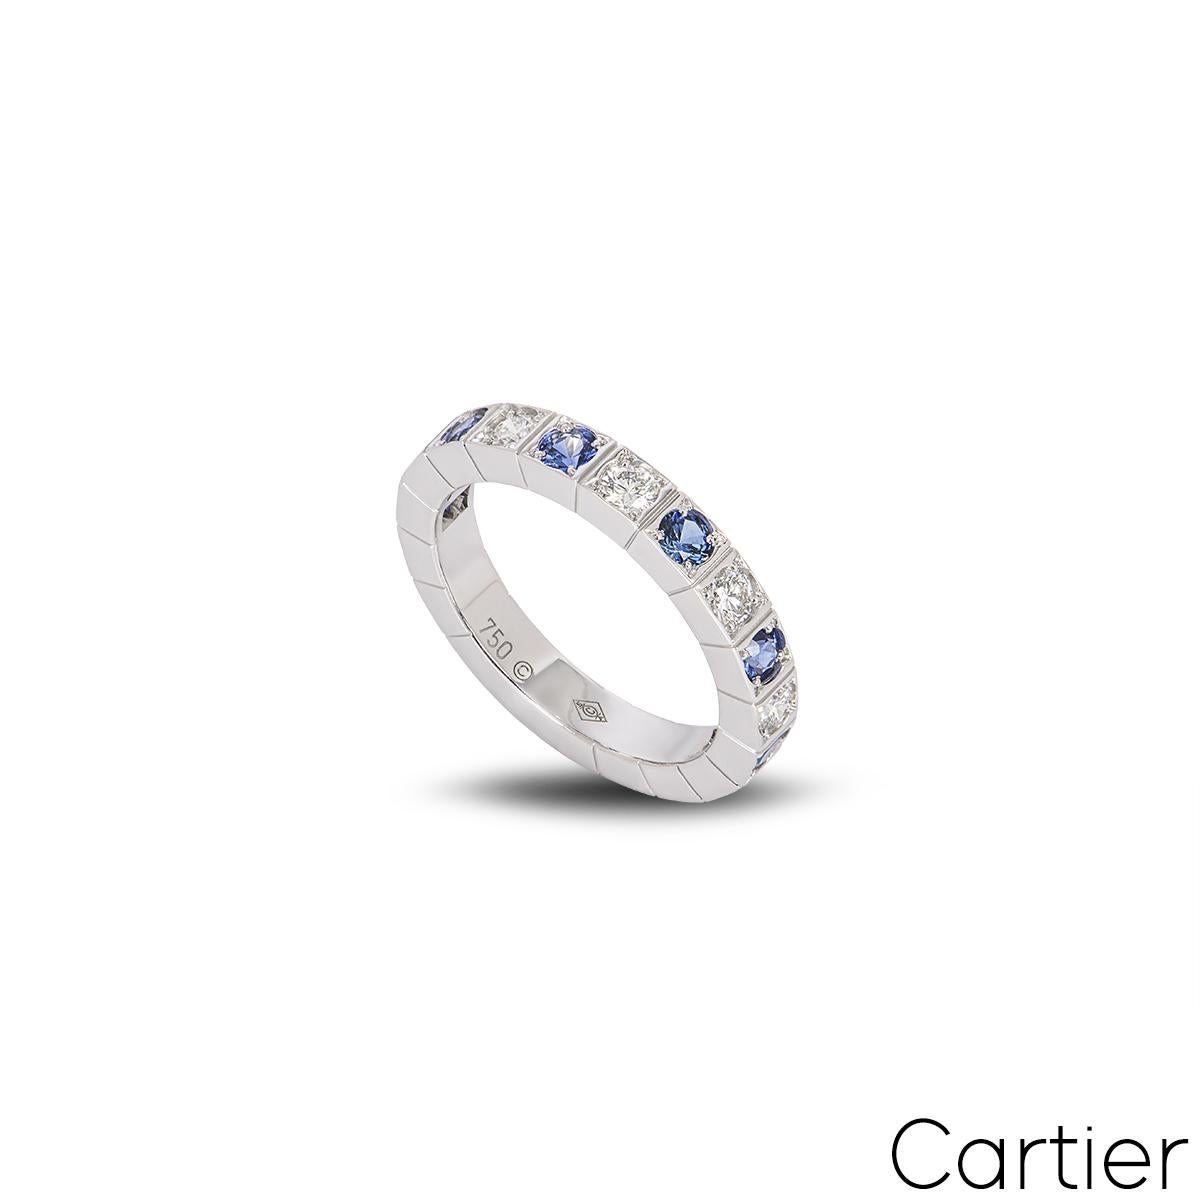 Ein zeitloser Ring aus 18 Karat Weißgold mit Diamanten und Saphiren von Cartier aus der Kollektion Lanieres. Der Ring ist mit 12 abwechselnd runden Diamanten und Saphiren im Brillantschliff besetzt, die durch das ikonische Lanieres-Design auf der